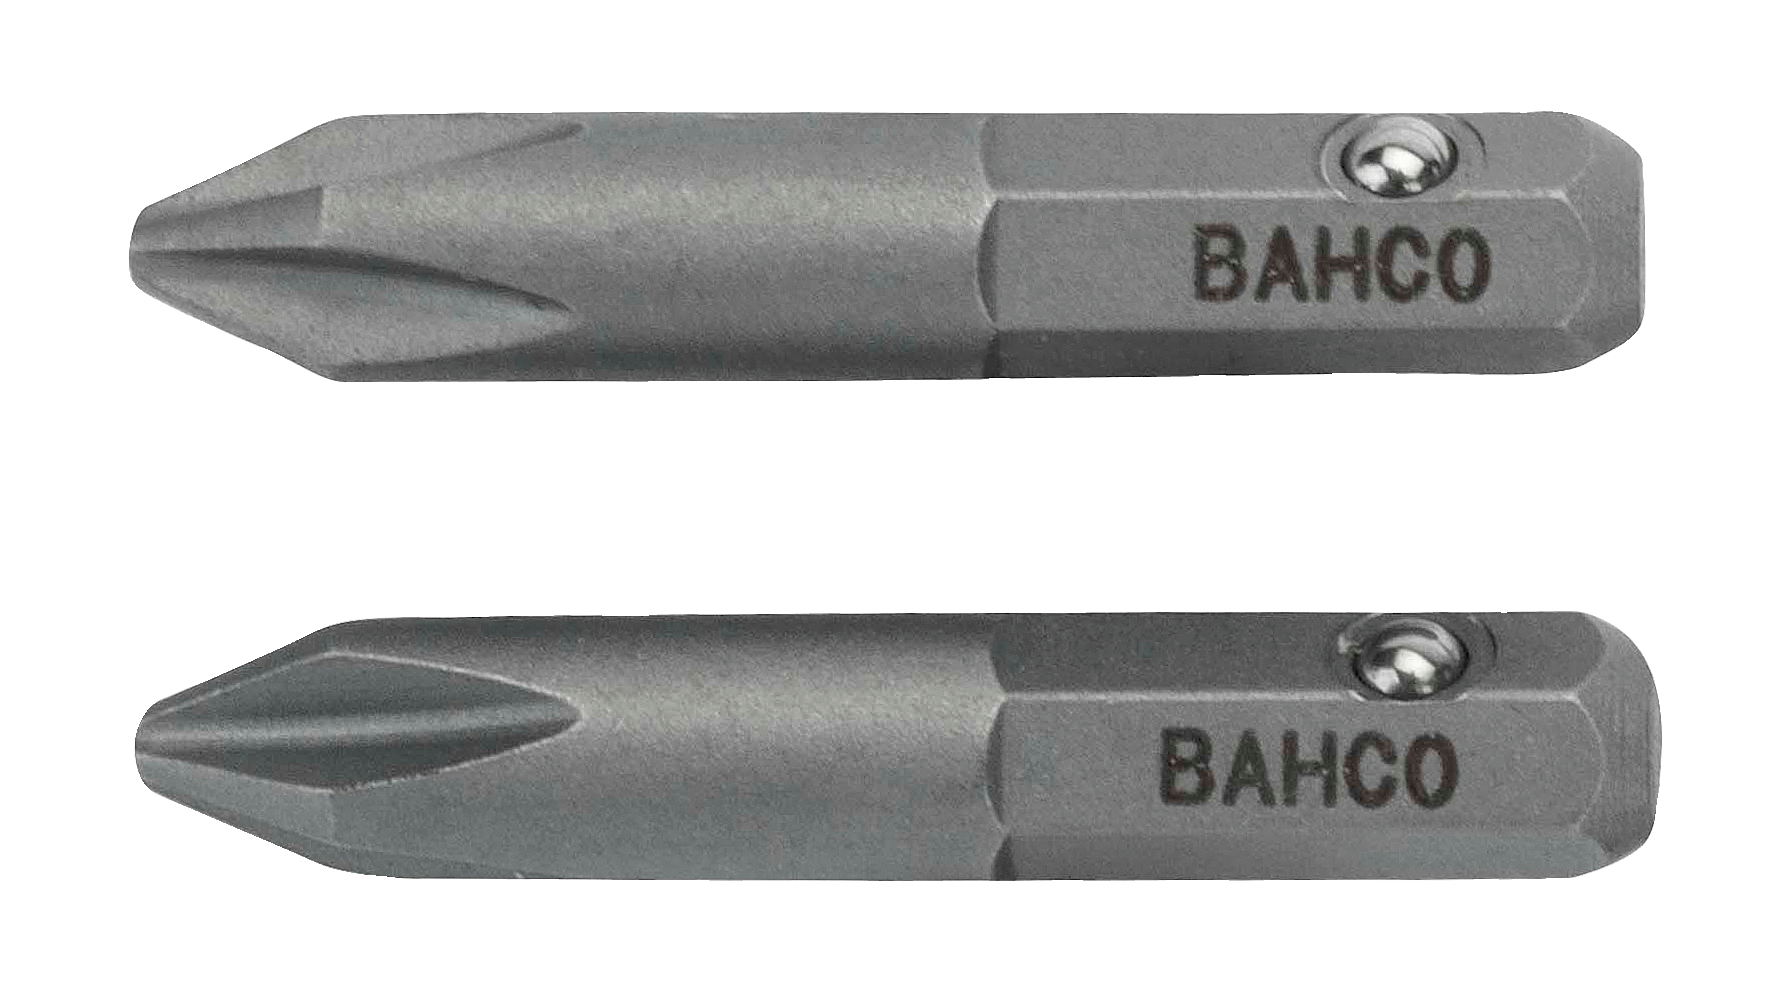 картинка Стандартные биты для отверток 5/32 дюйма Phillips, 25 мм BAHCO 45S/PH2 от магазина "Элит-инструмент"